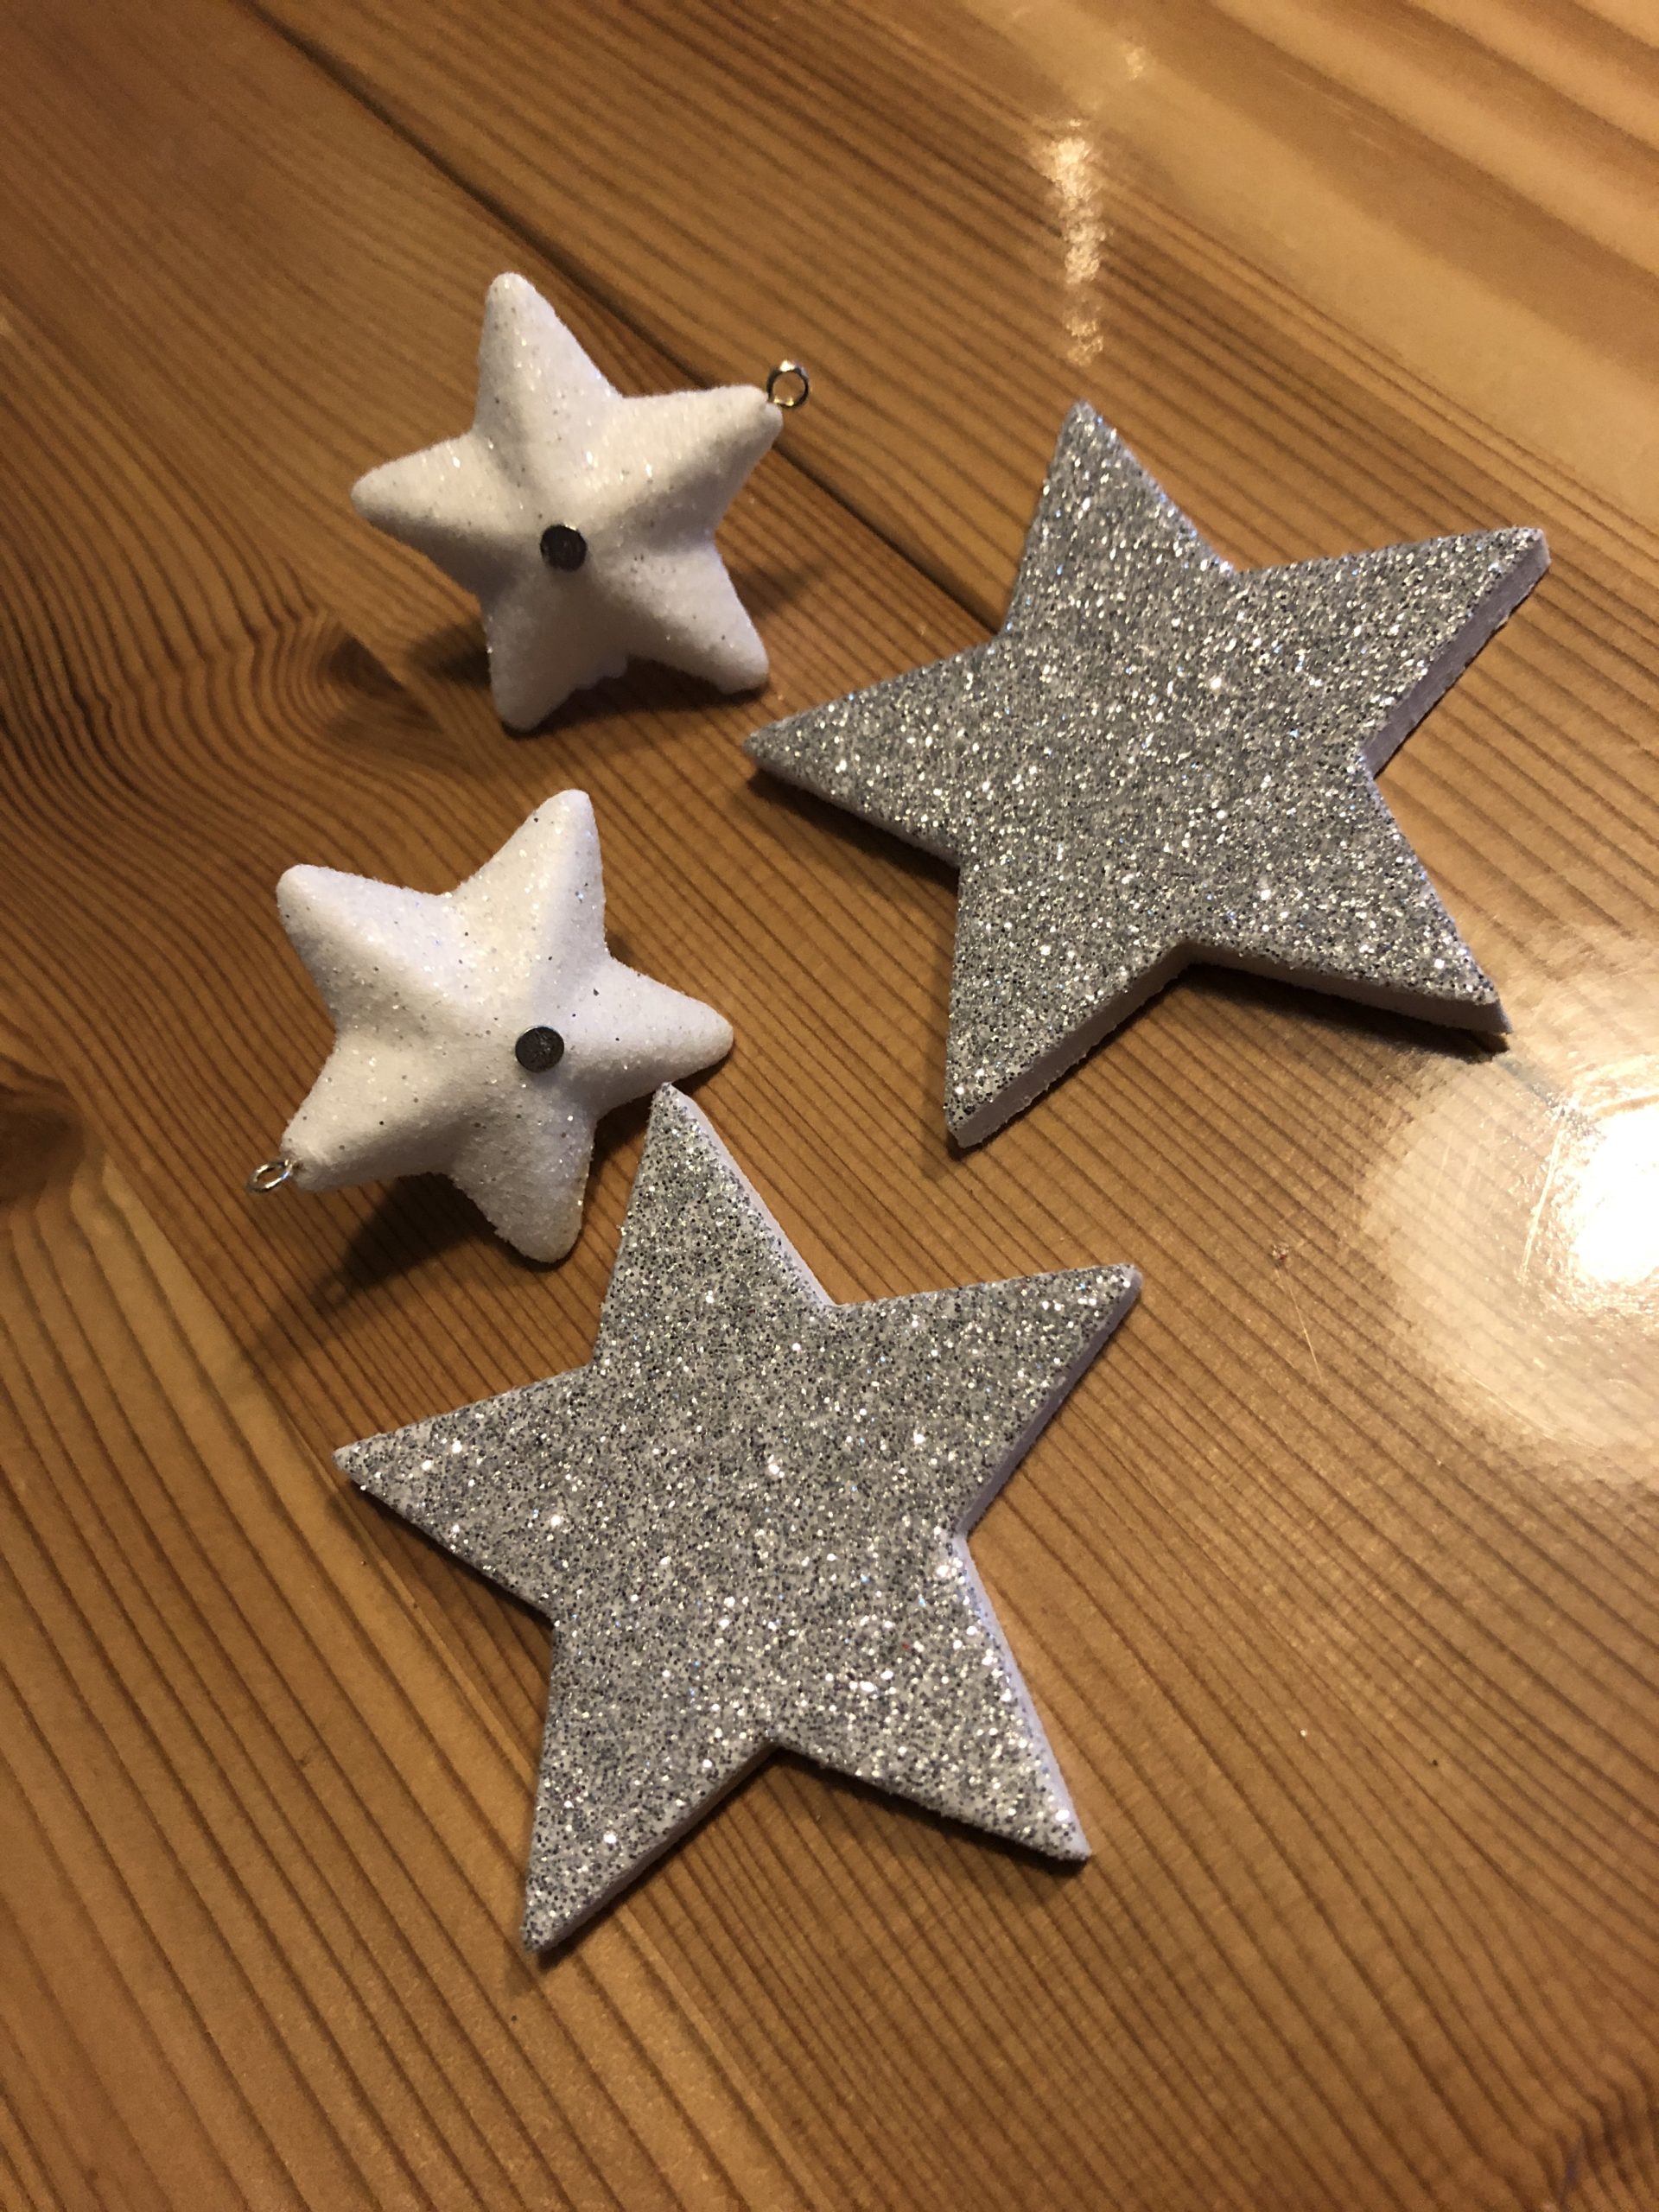 Bild zum Schritt 10 für das Bastel- und DIY-Abenteuer für Kinder: 'Nehmt verschiedene Sterne aus Schaumstoff, Pappe, Styropor oder schneidet euch...'